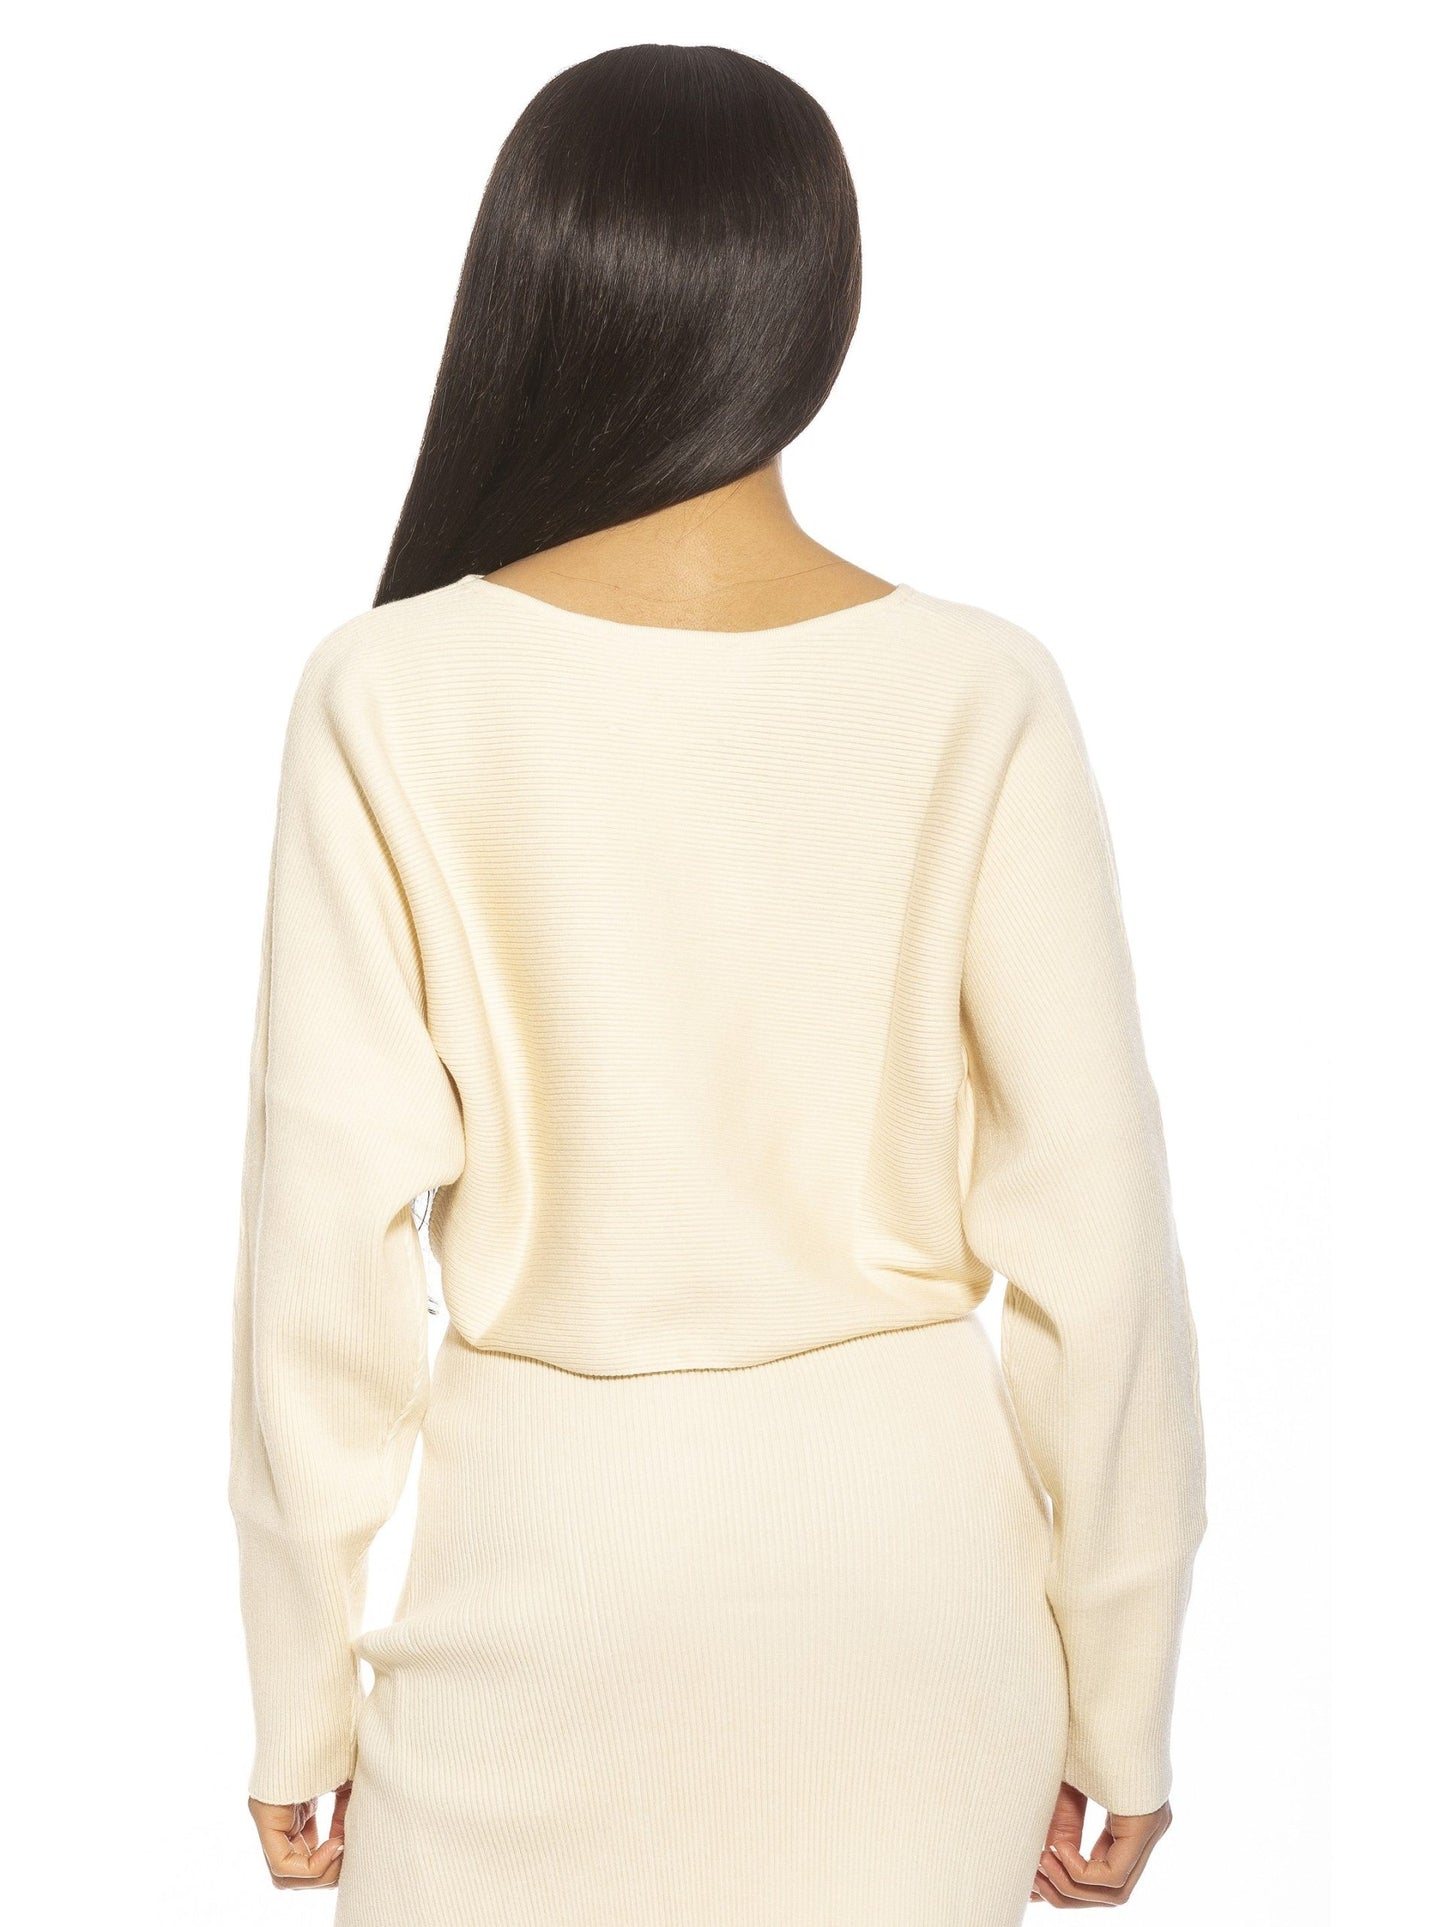 ALEXIA ADMOR Kenzie Sweater (NWT) size - XS